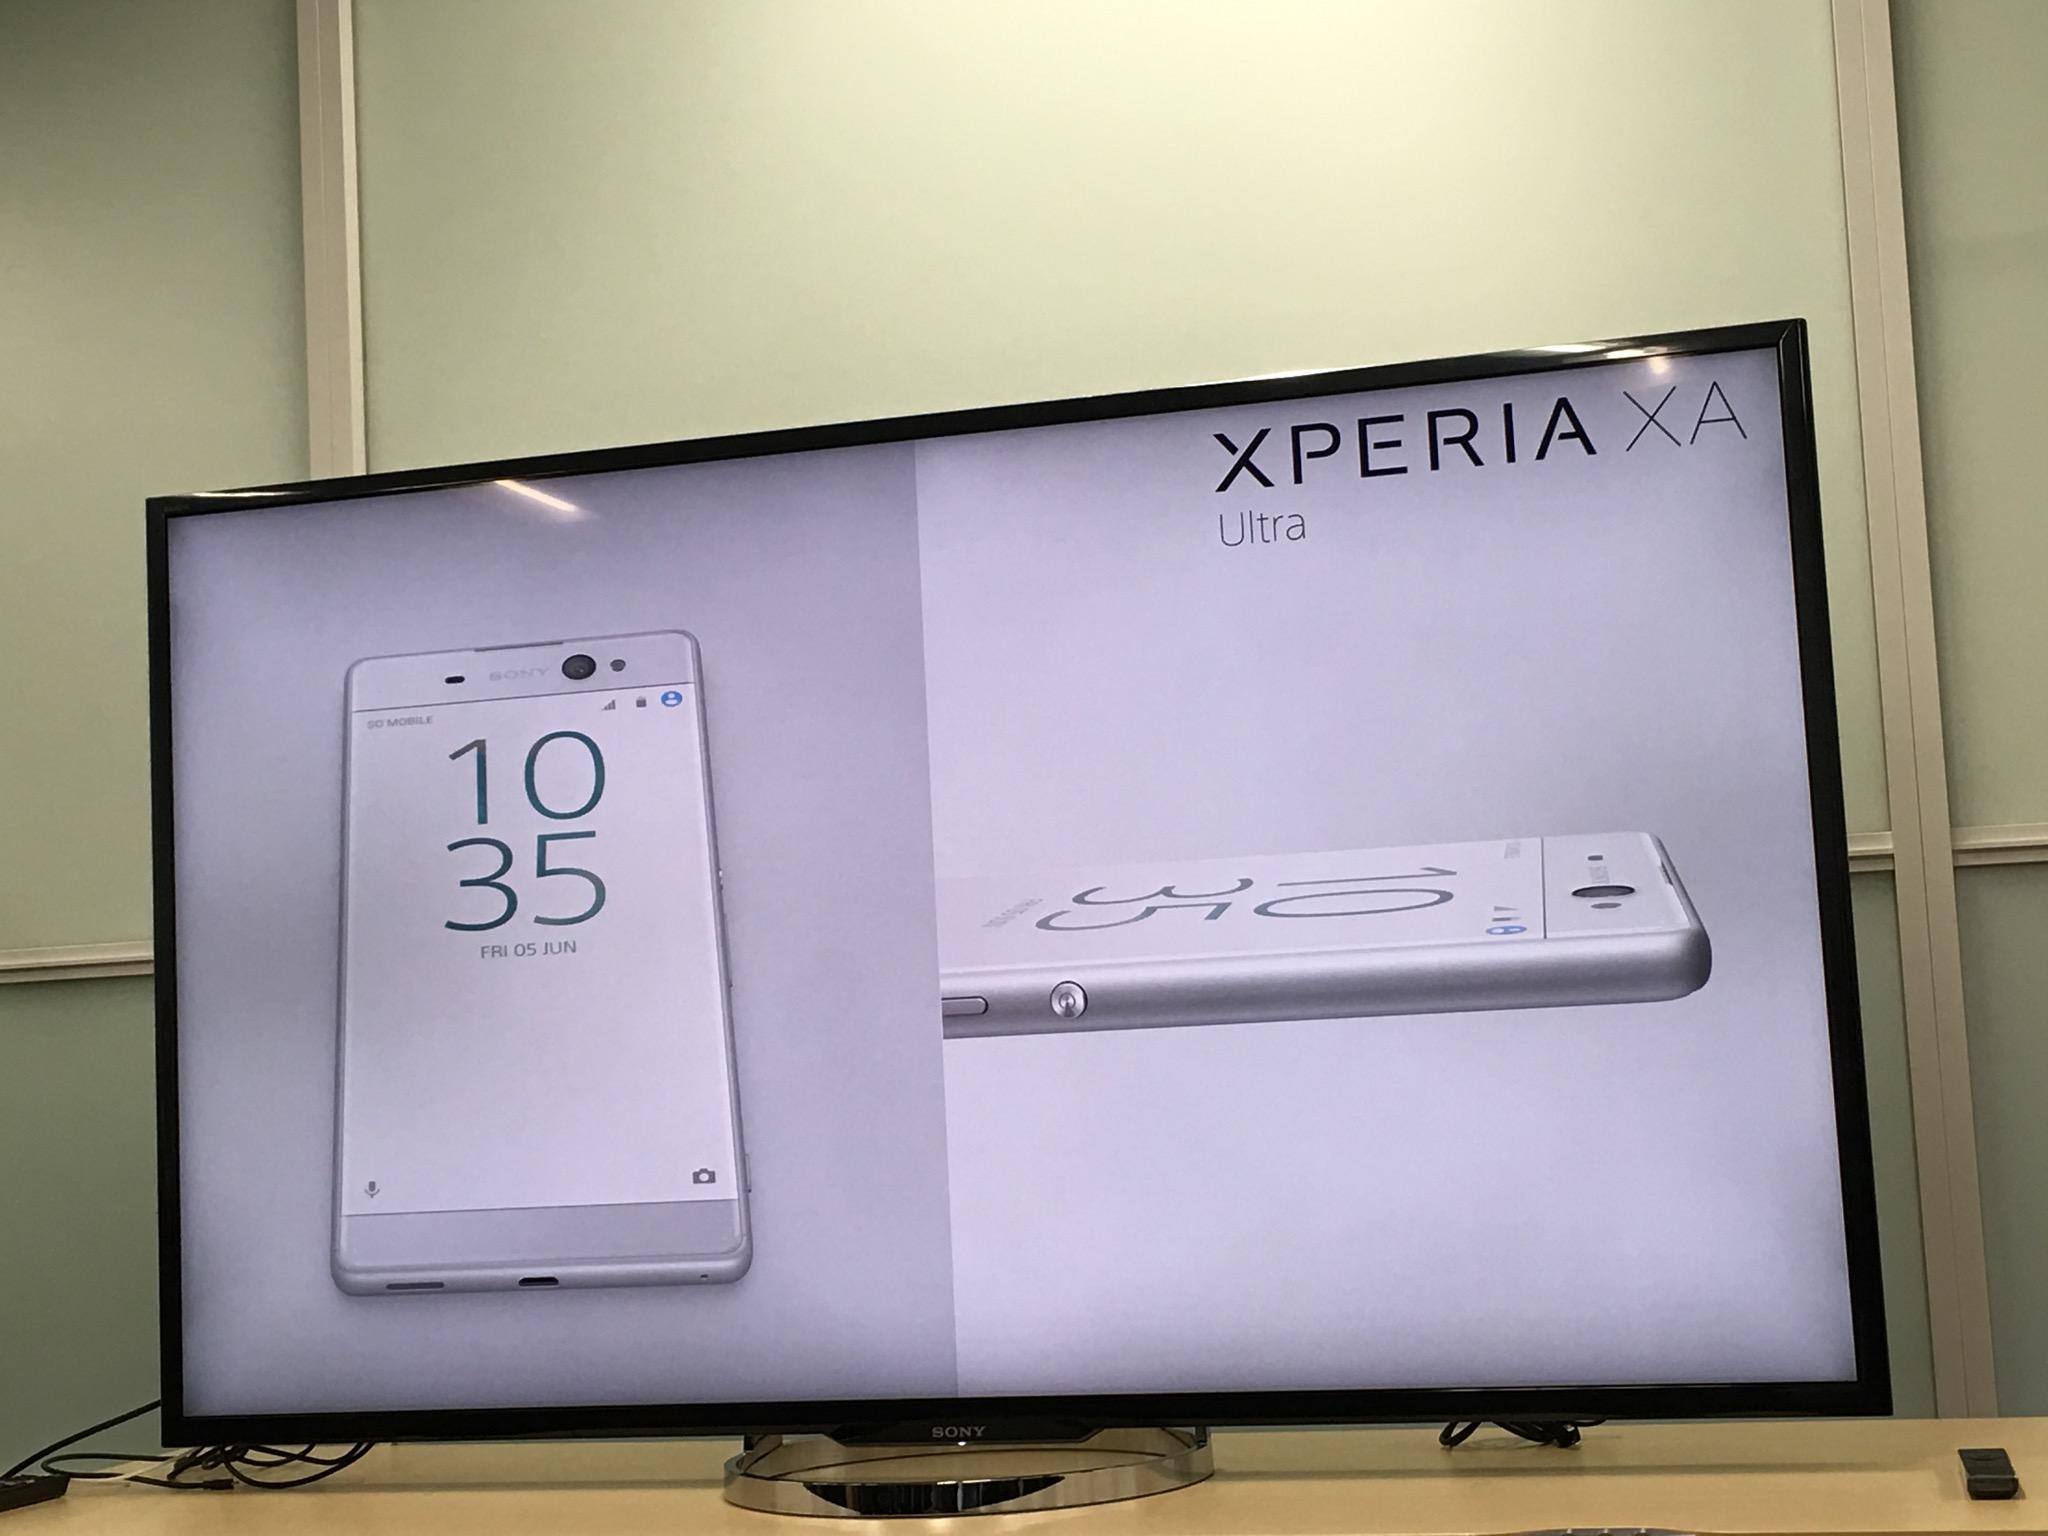 Xperia XA Ultra en blanco dentro de pantalla